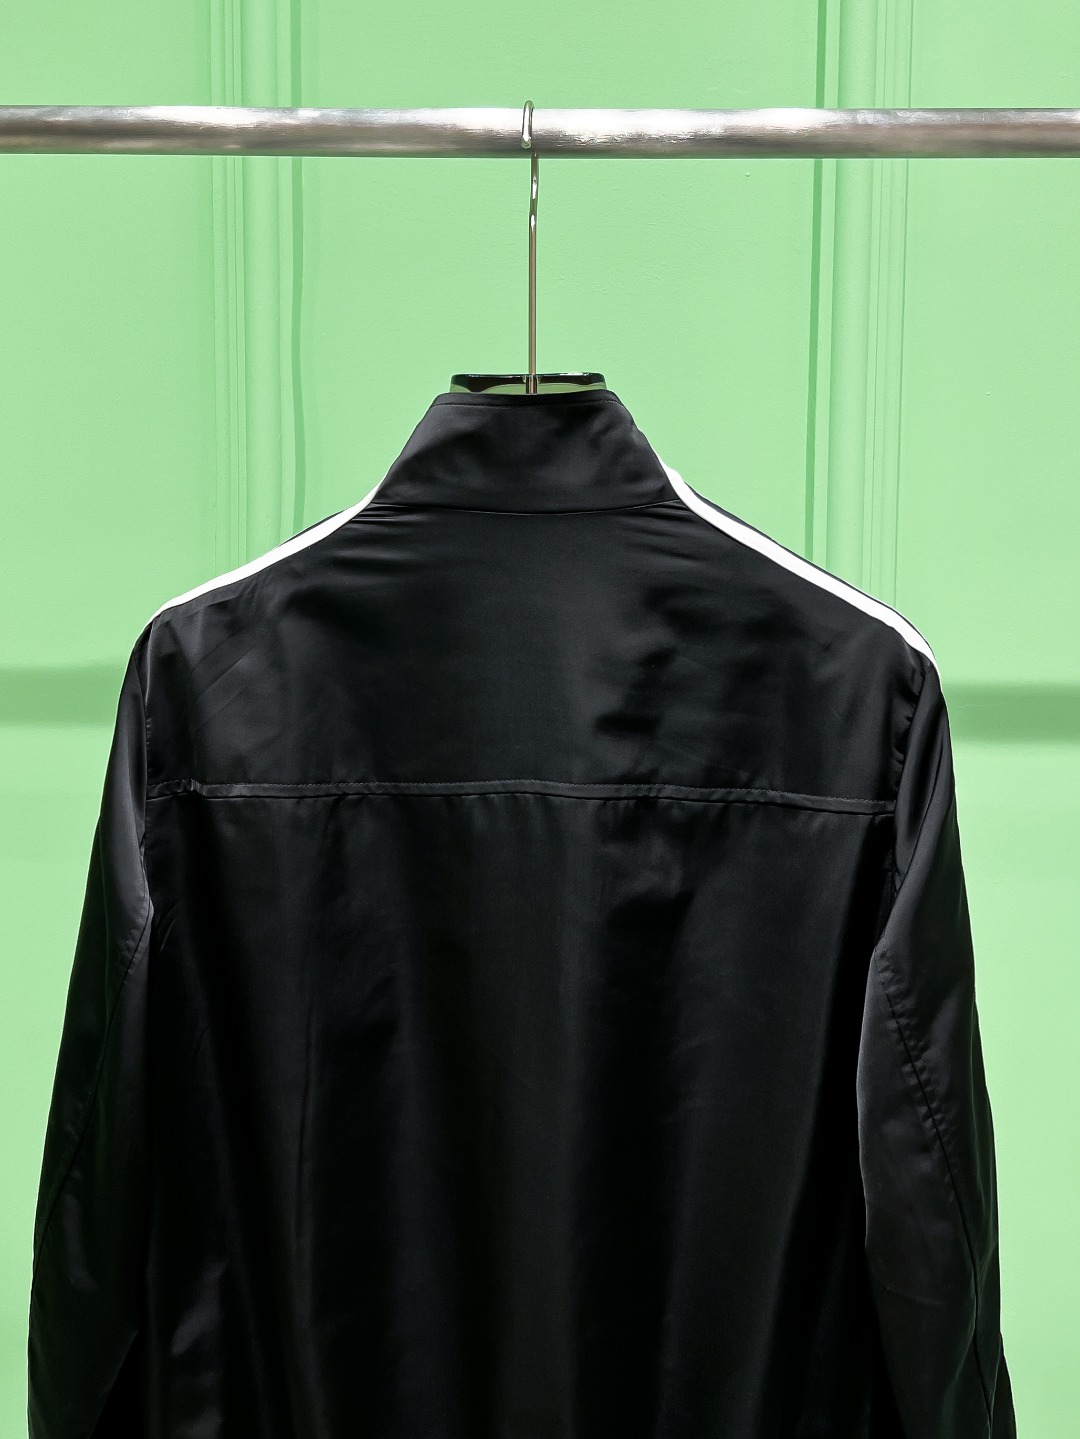 Y-3#24ss风衣系男装高端梭织外套高端精品系列男女同款贸易公司渠道订单官网专柜在售系列业内独家首发经